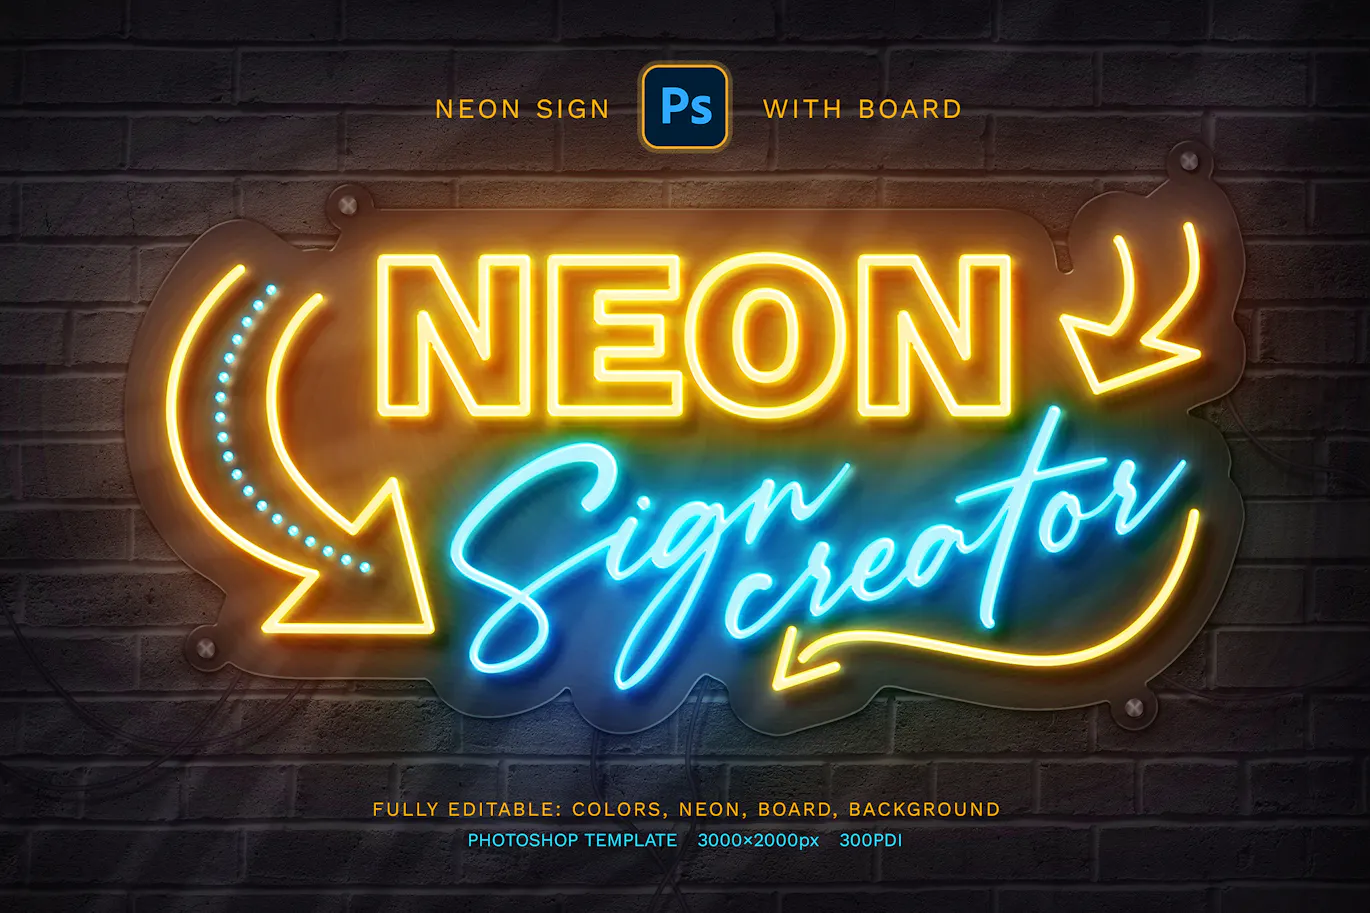 霓虹灯标志发光文字效果PSD模板 - Neon Sign Board